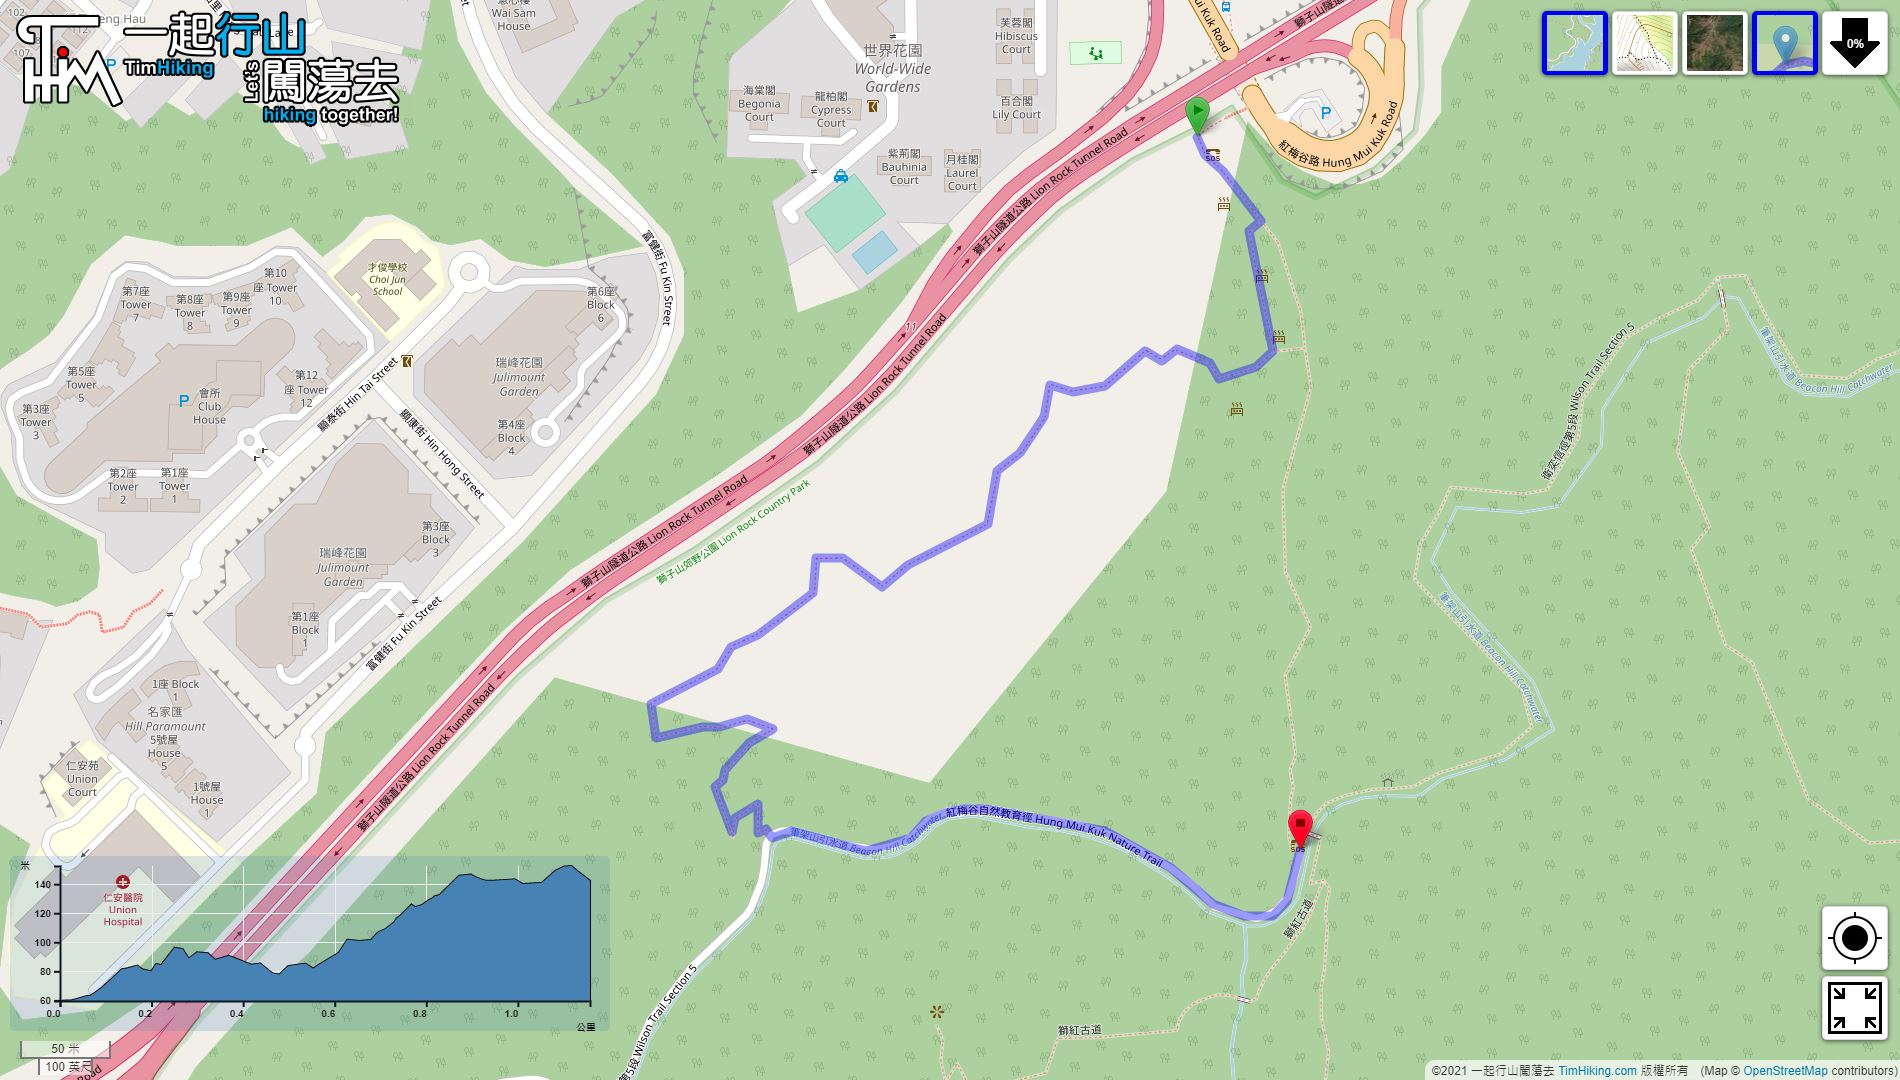 「紅梅谷自然教育徑」路線地圖